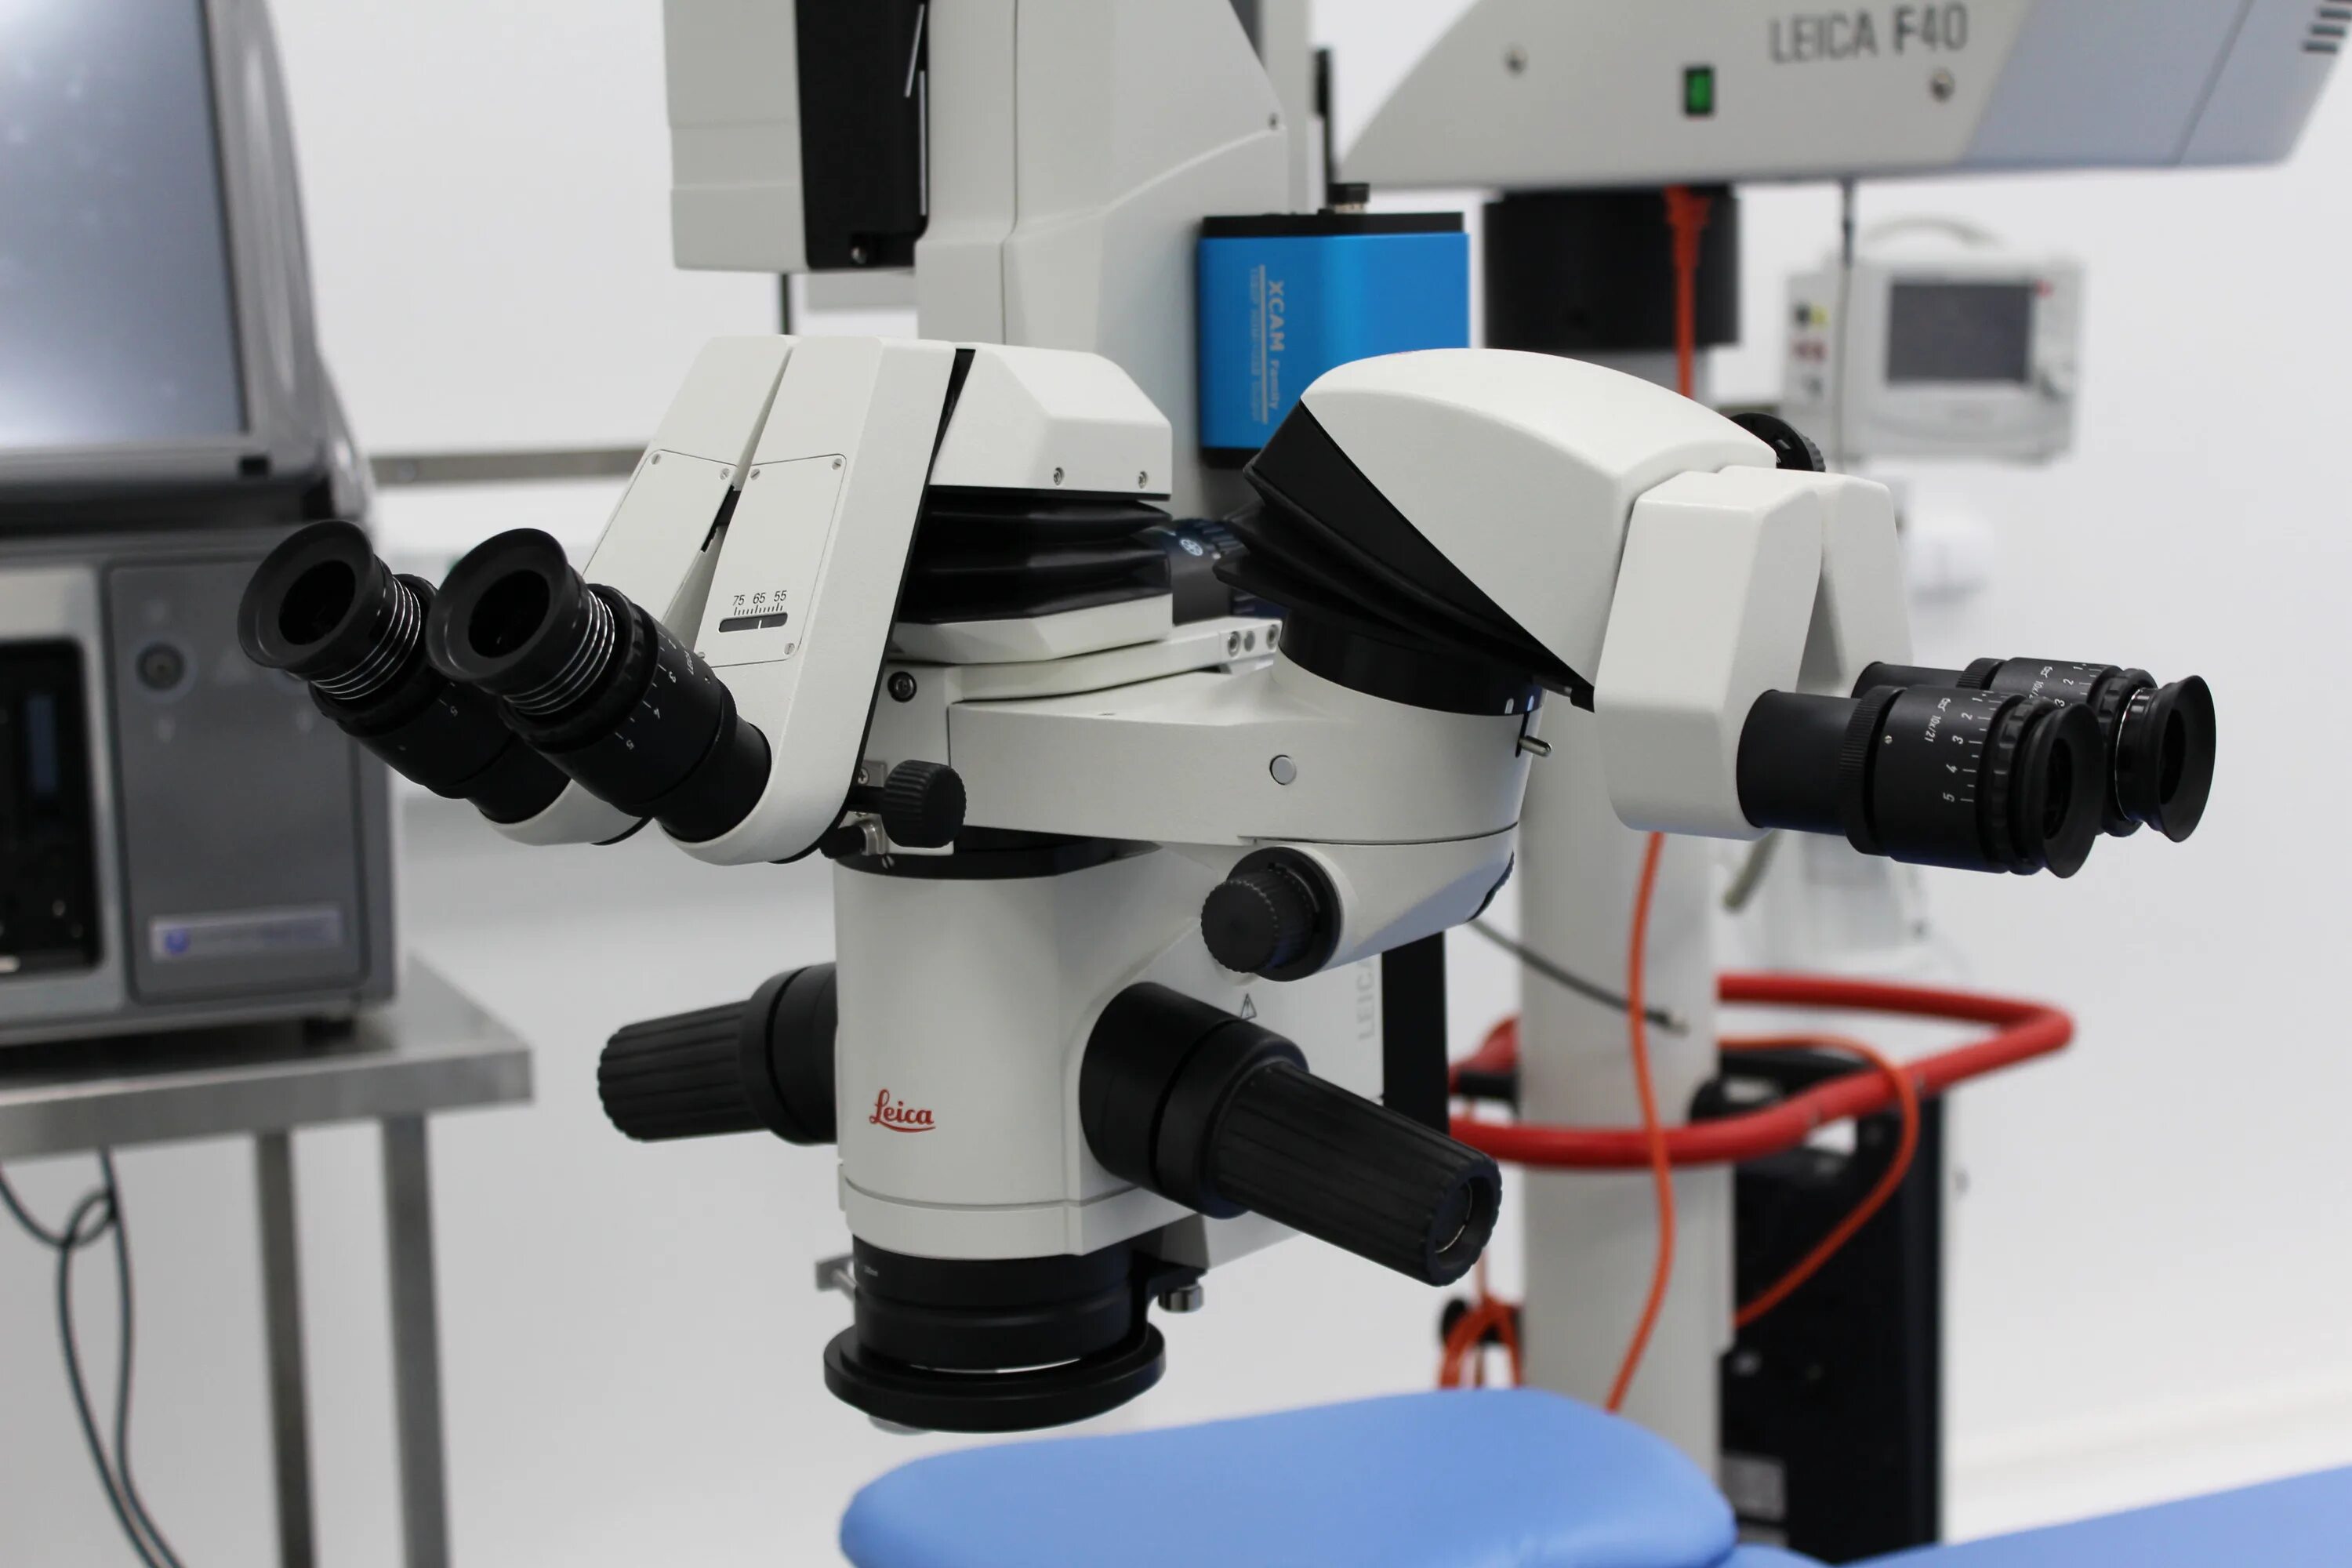 Операционный микроскоп Leica m844 f40 Surgical Microscope. Микроскоп CJ Optic. Лампа щелевая офтальмологическая SL 120. Микроскопа биологического операционного Leica m844.